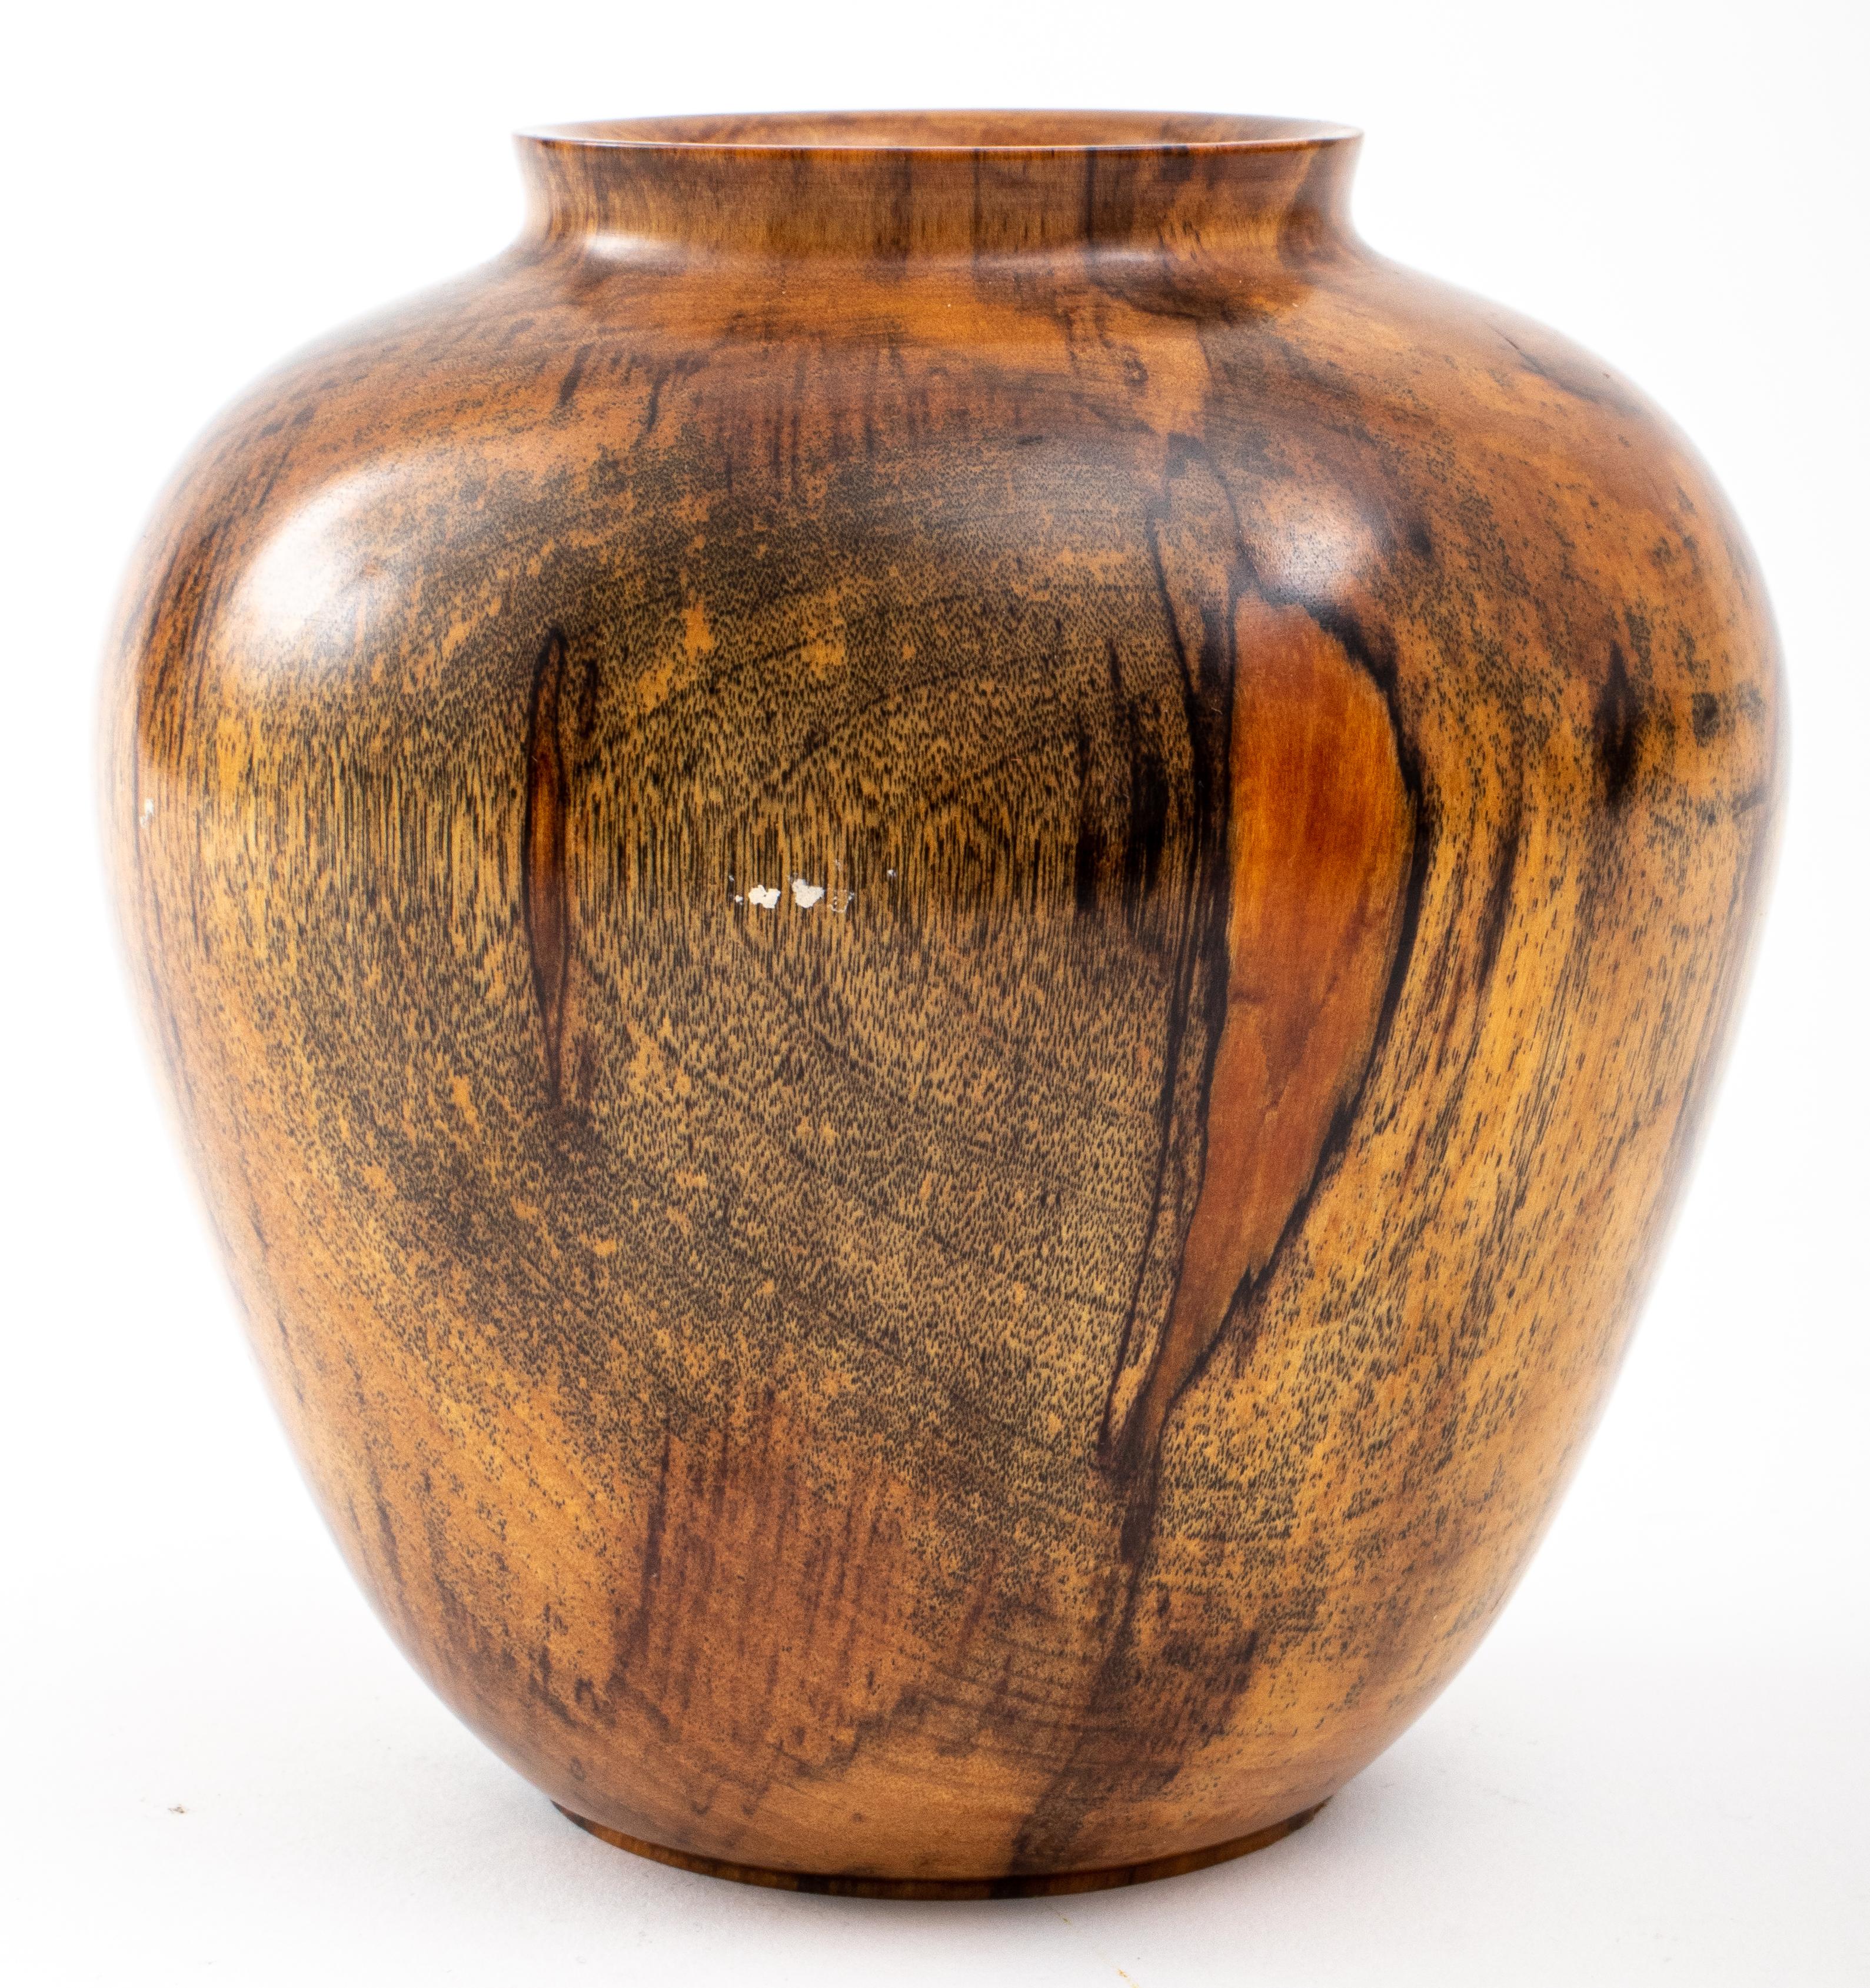 Tom Laser (American, 1938 - 2021), a turned black birch vase, signed on base 